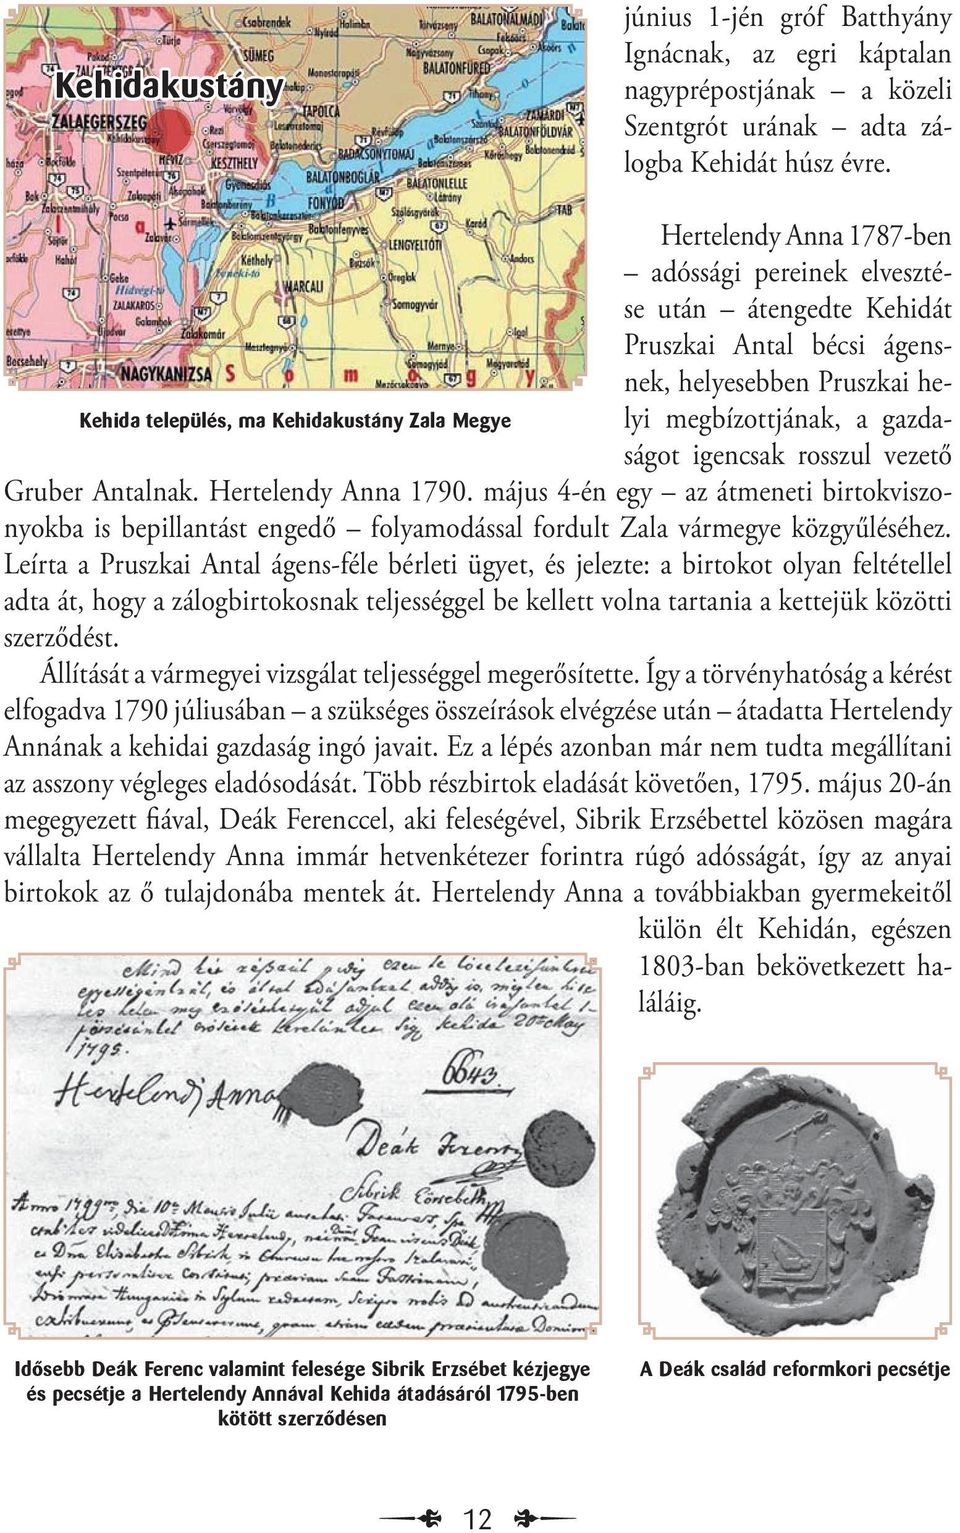 Megye ságot igencsak rosszul vezető Gruber Antalnak. Hertelendy Anna 1790. május 4-én egy az átmeneti birtokviszonyokba is bepillantást engedő folyamodással fordult Zala vármegye közgyűléséhez.